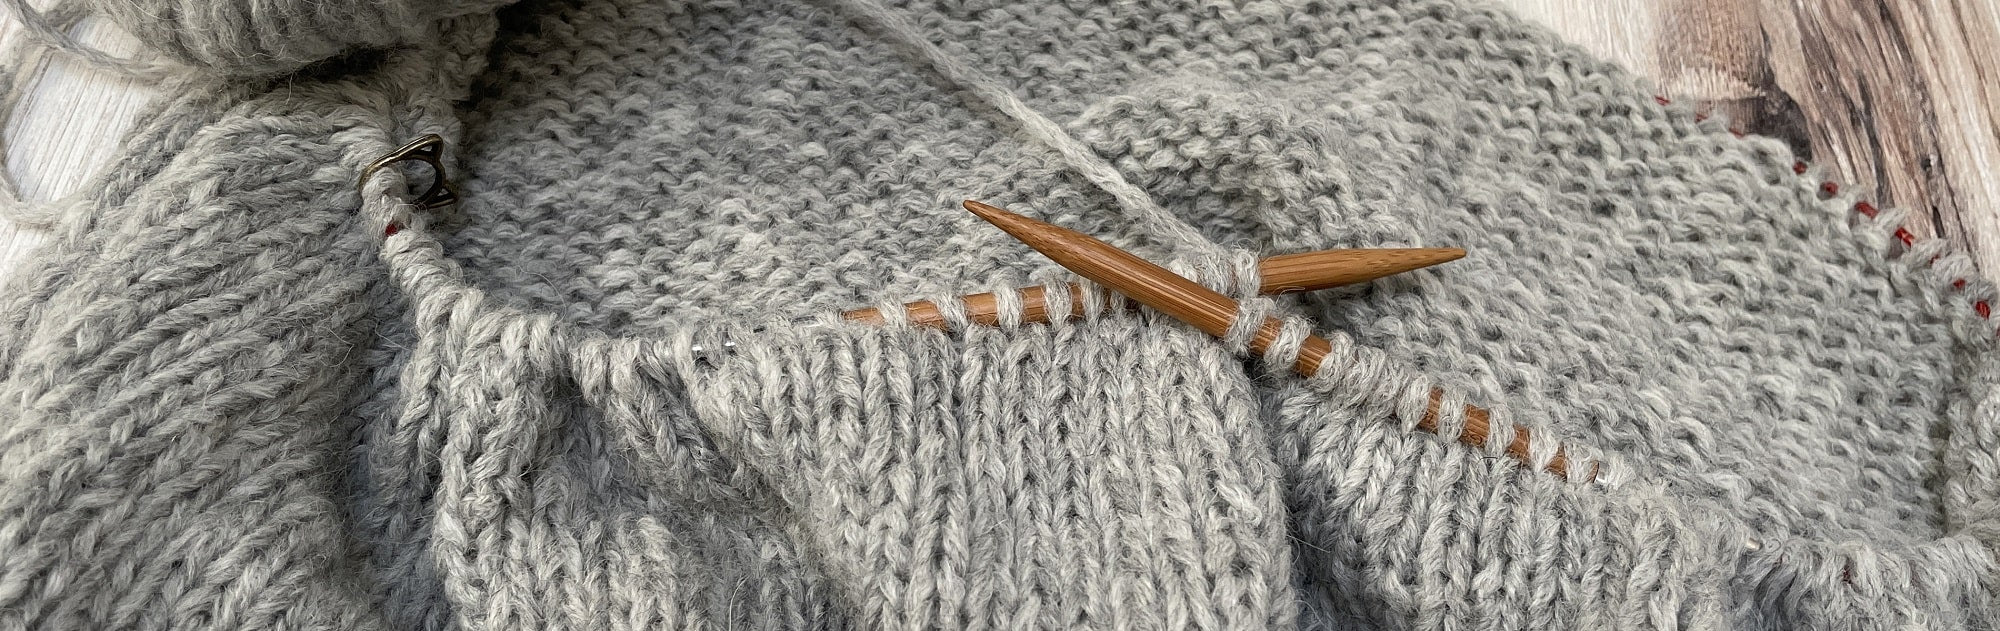 Loom Knit Diagonal Lace Scarf – Lion Brand Yarn